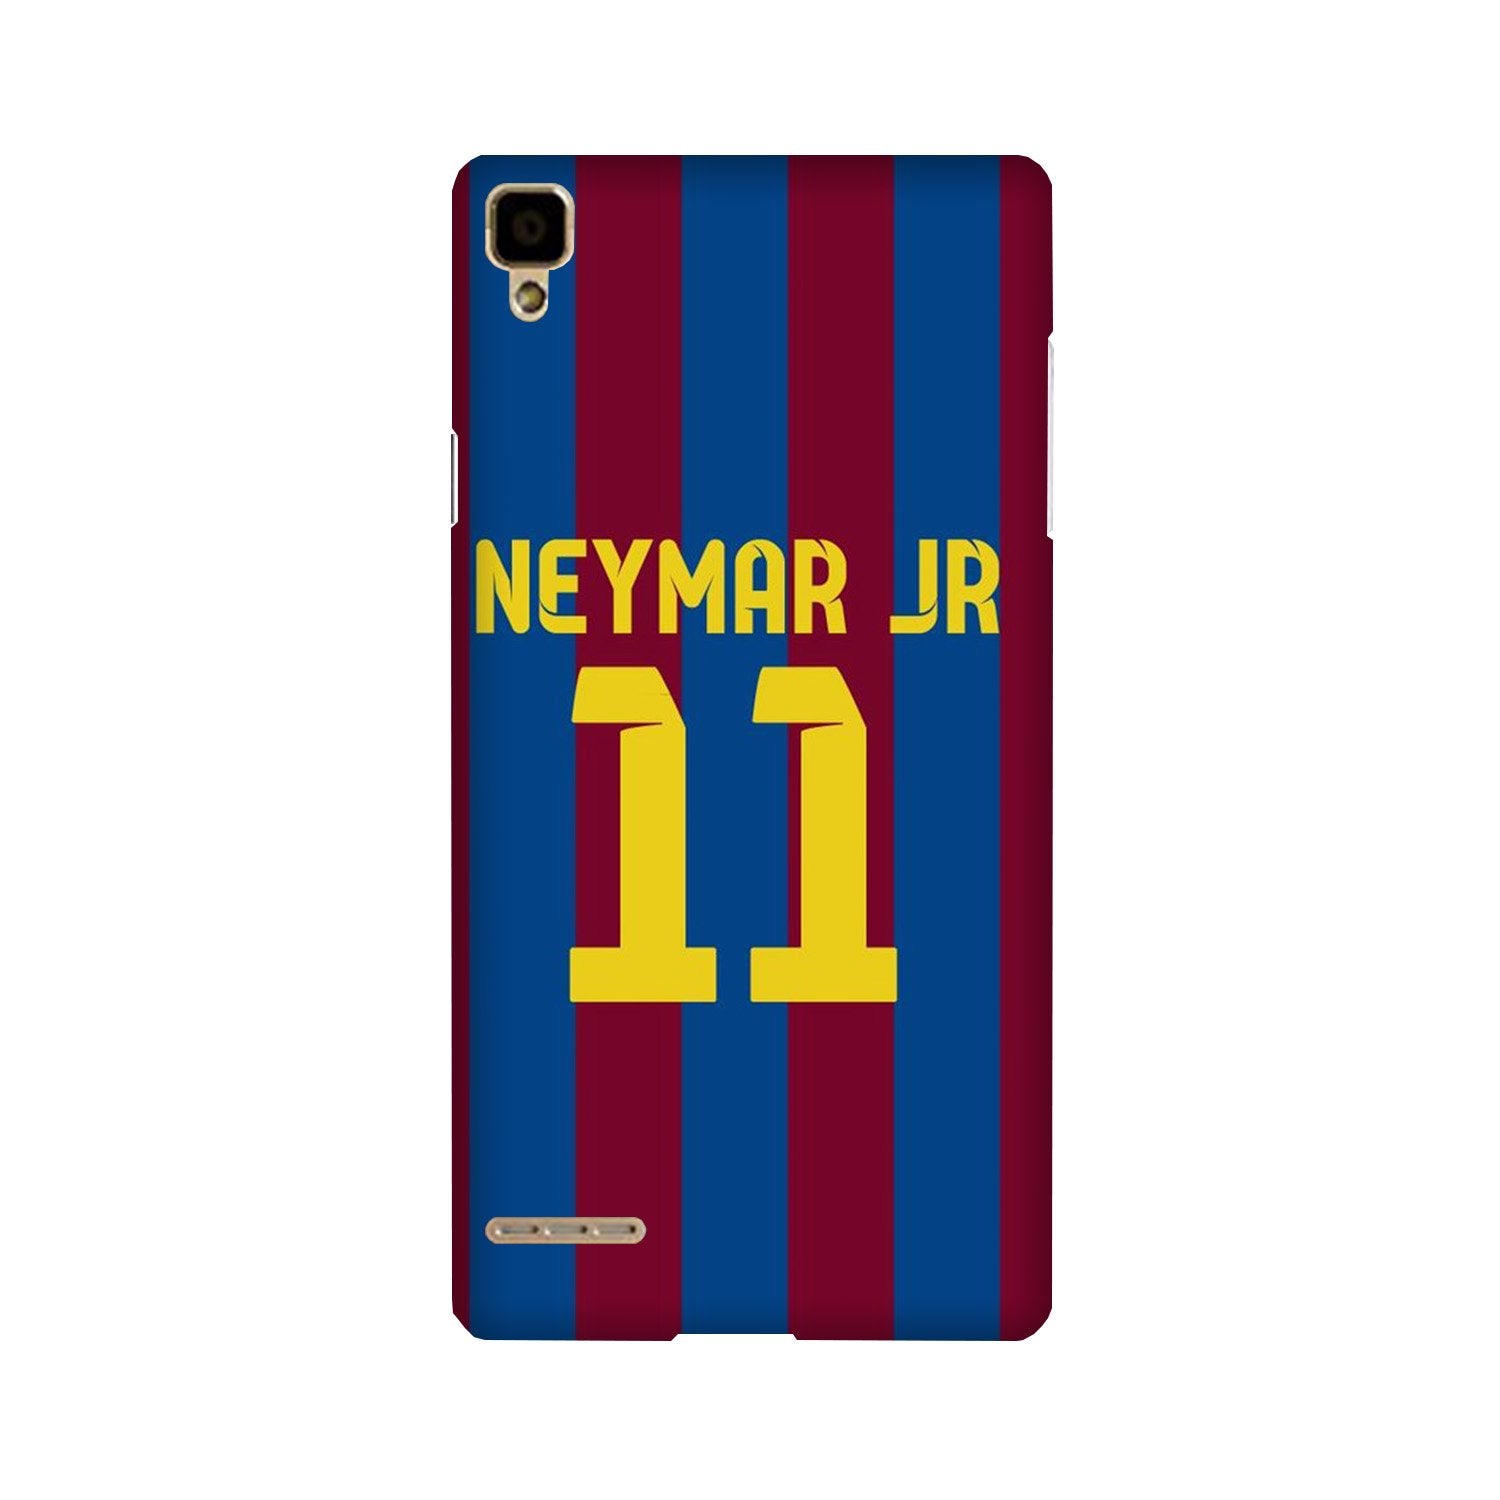 Neymar Jr Case for Oppo F1  (Design - 162)